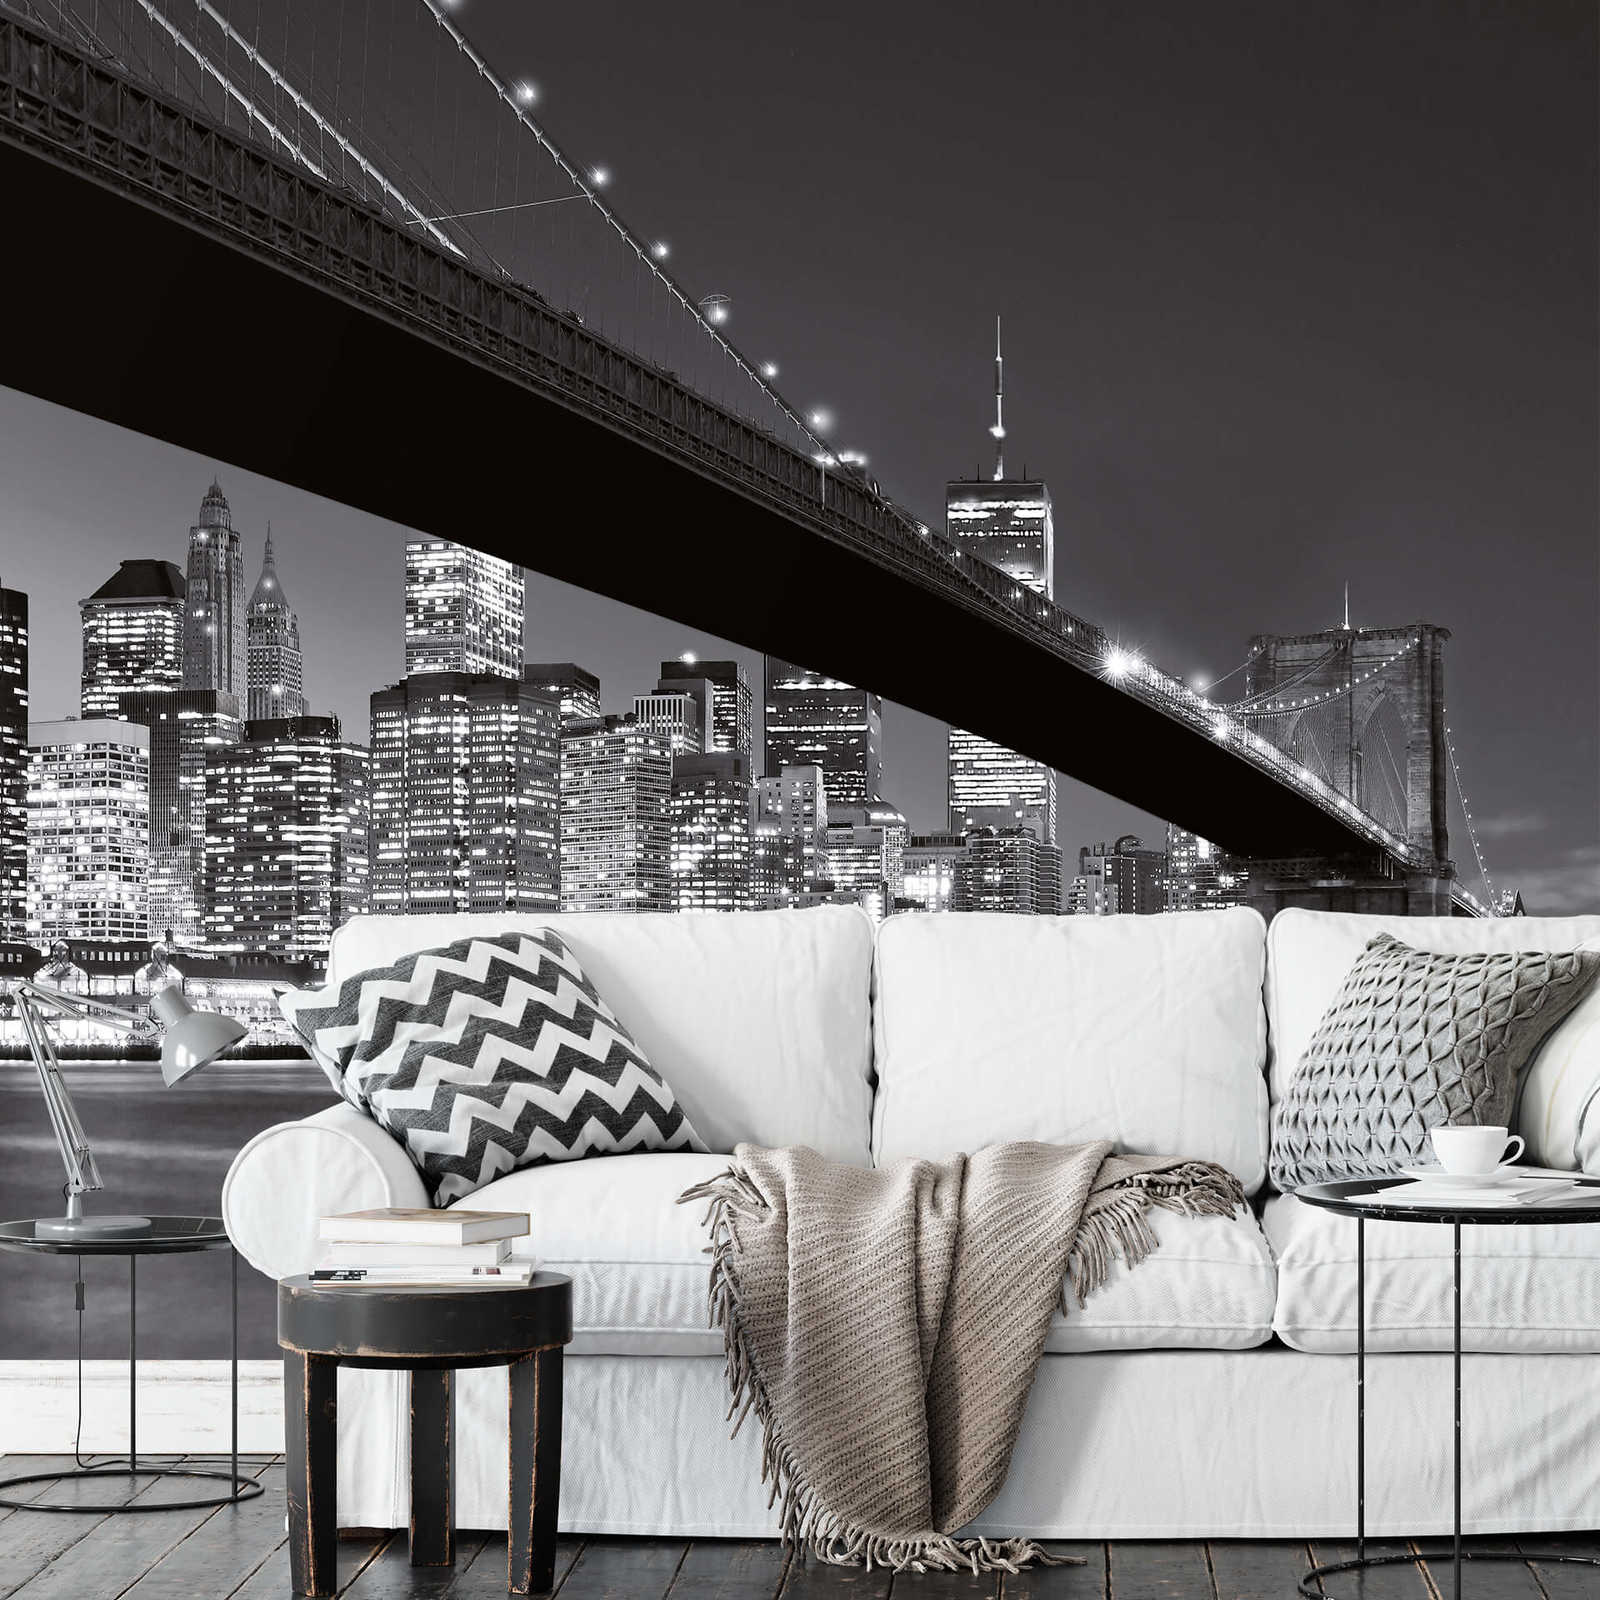             Papel pintado blanco y negro del puente de Brooklyn en Nueva York
        